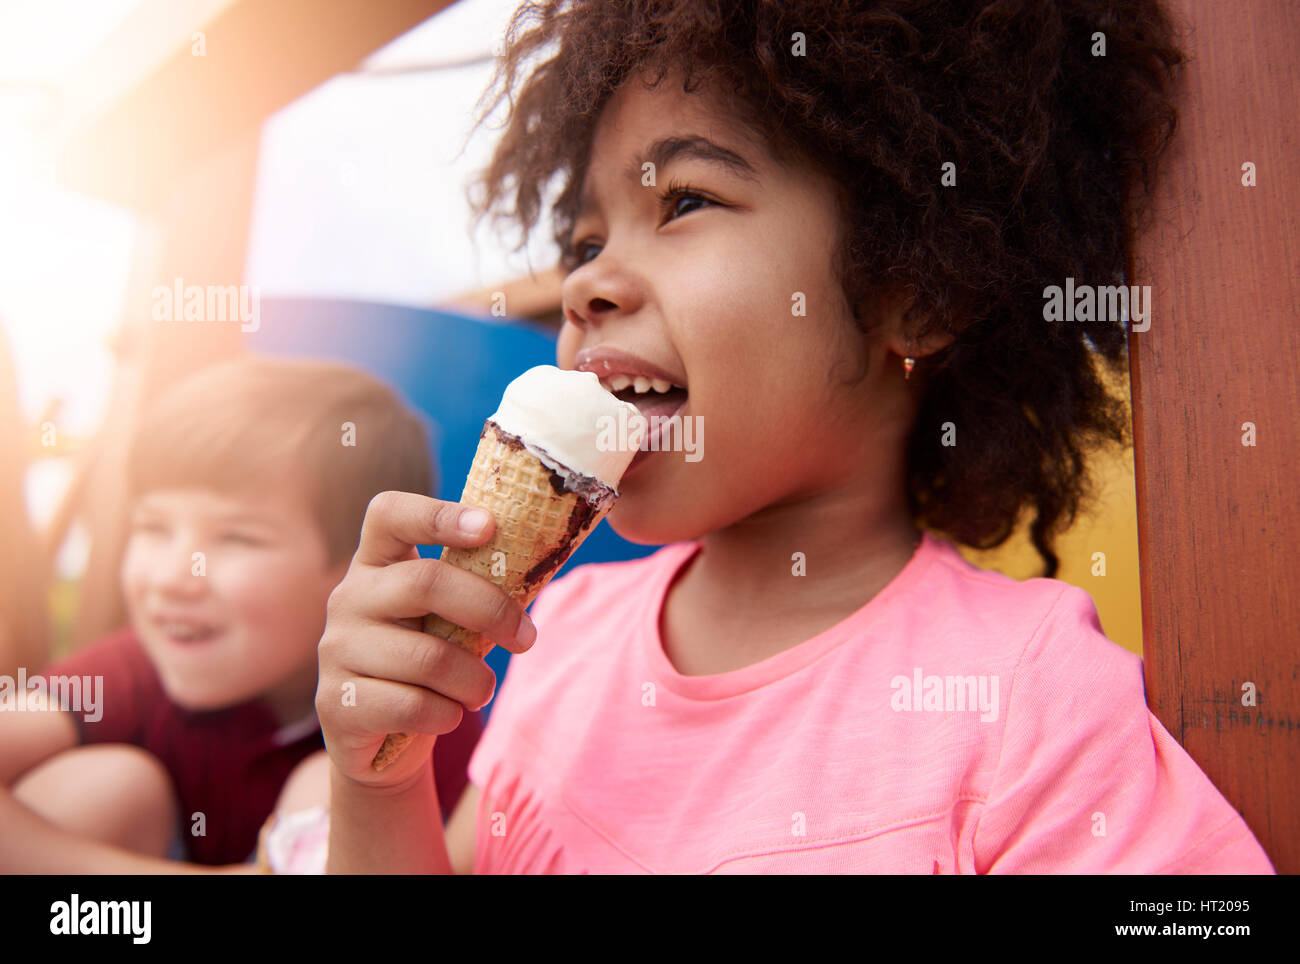 Eating ice cream make me happy Stock Photo